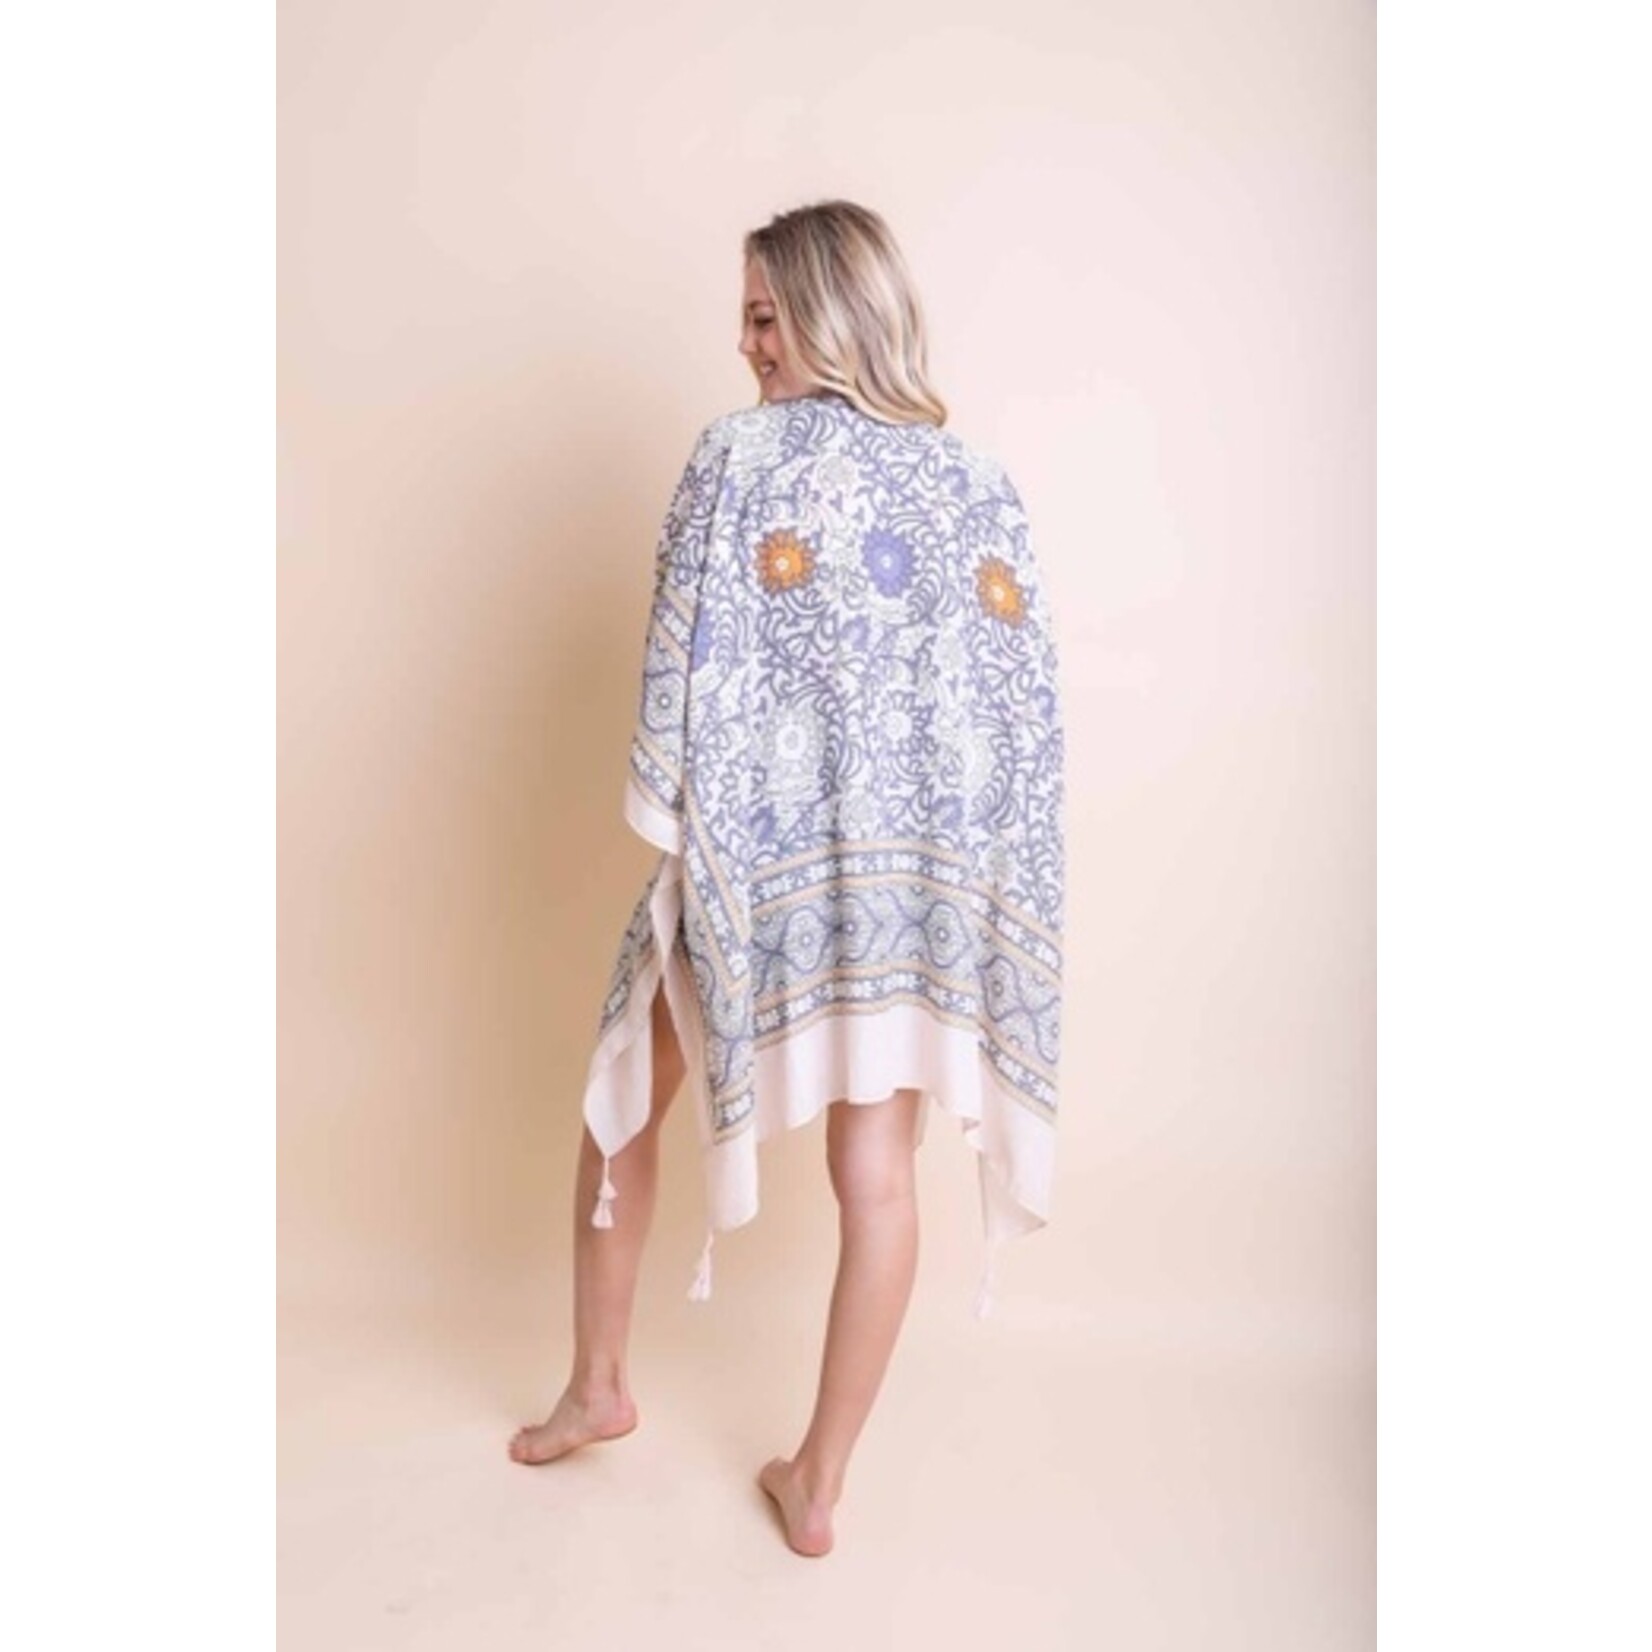 Leto Accessories Leto Accessories Tapestry Tassel Kimono-Ivory